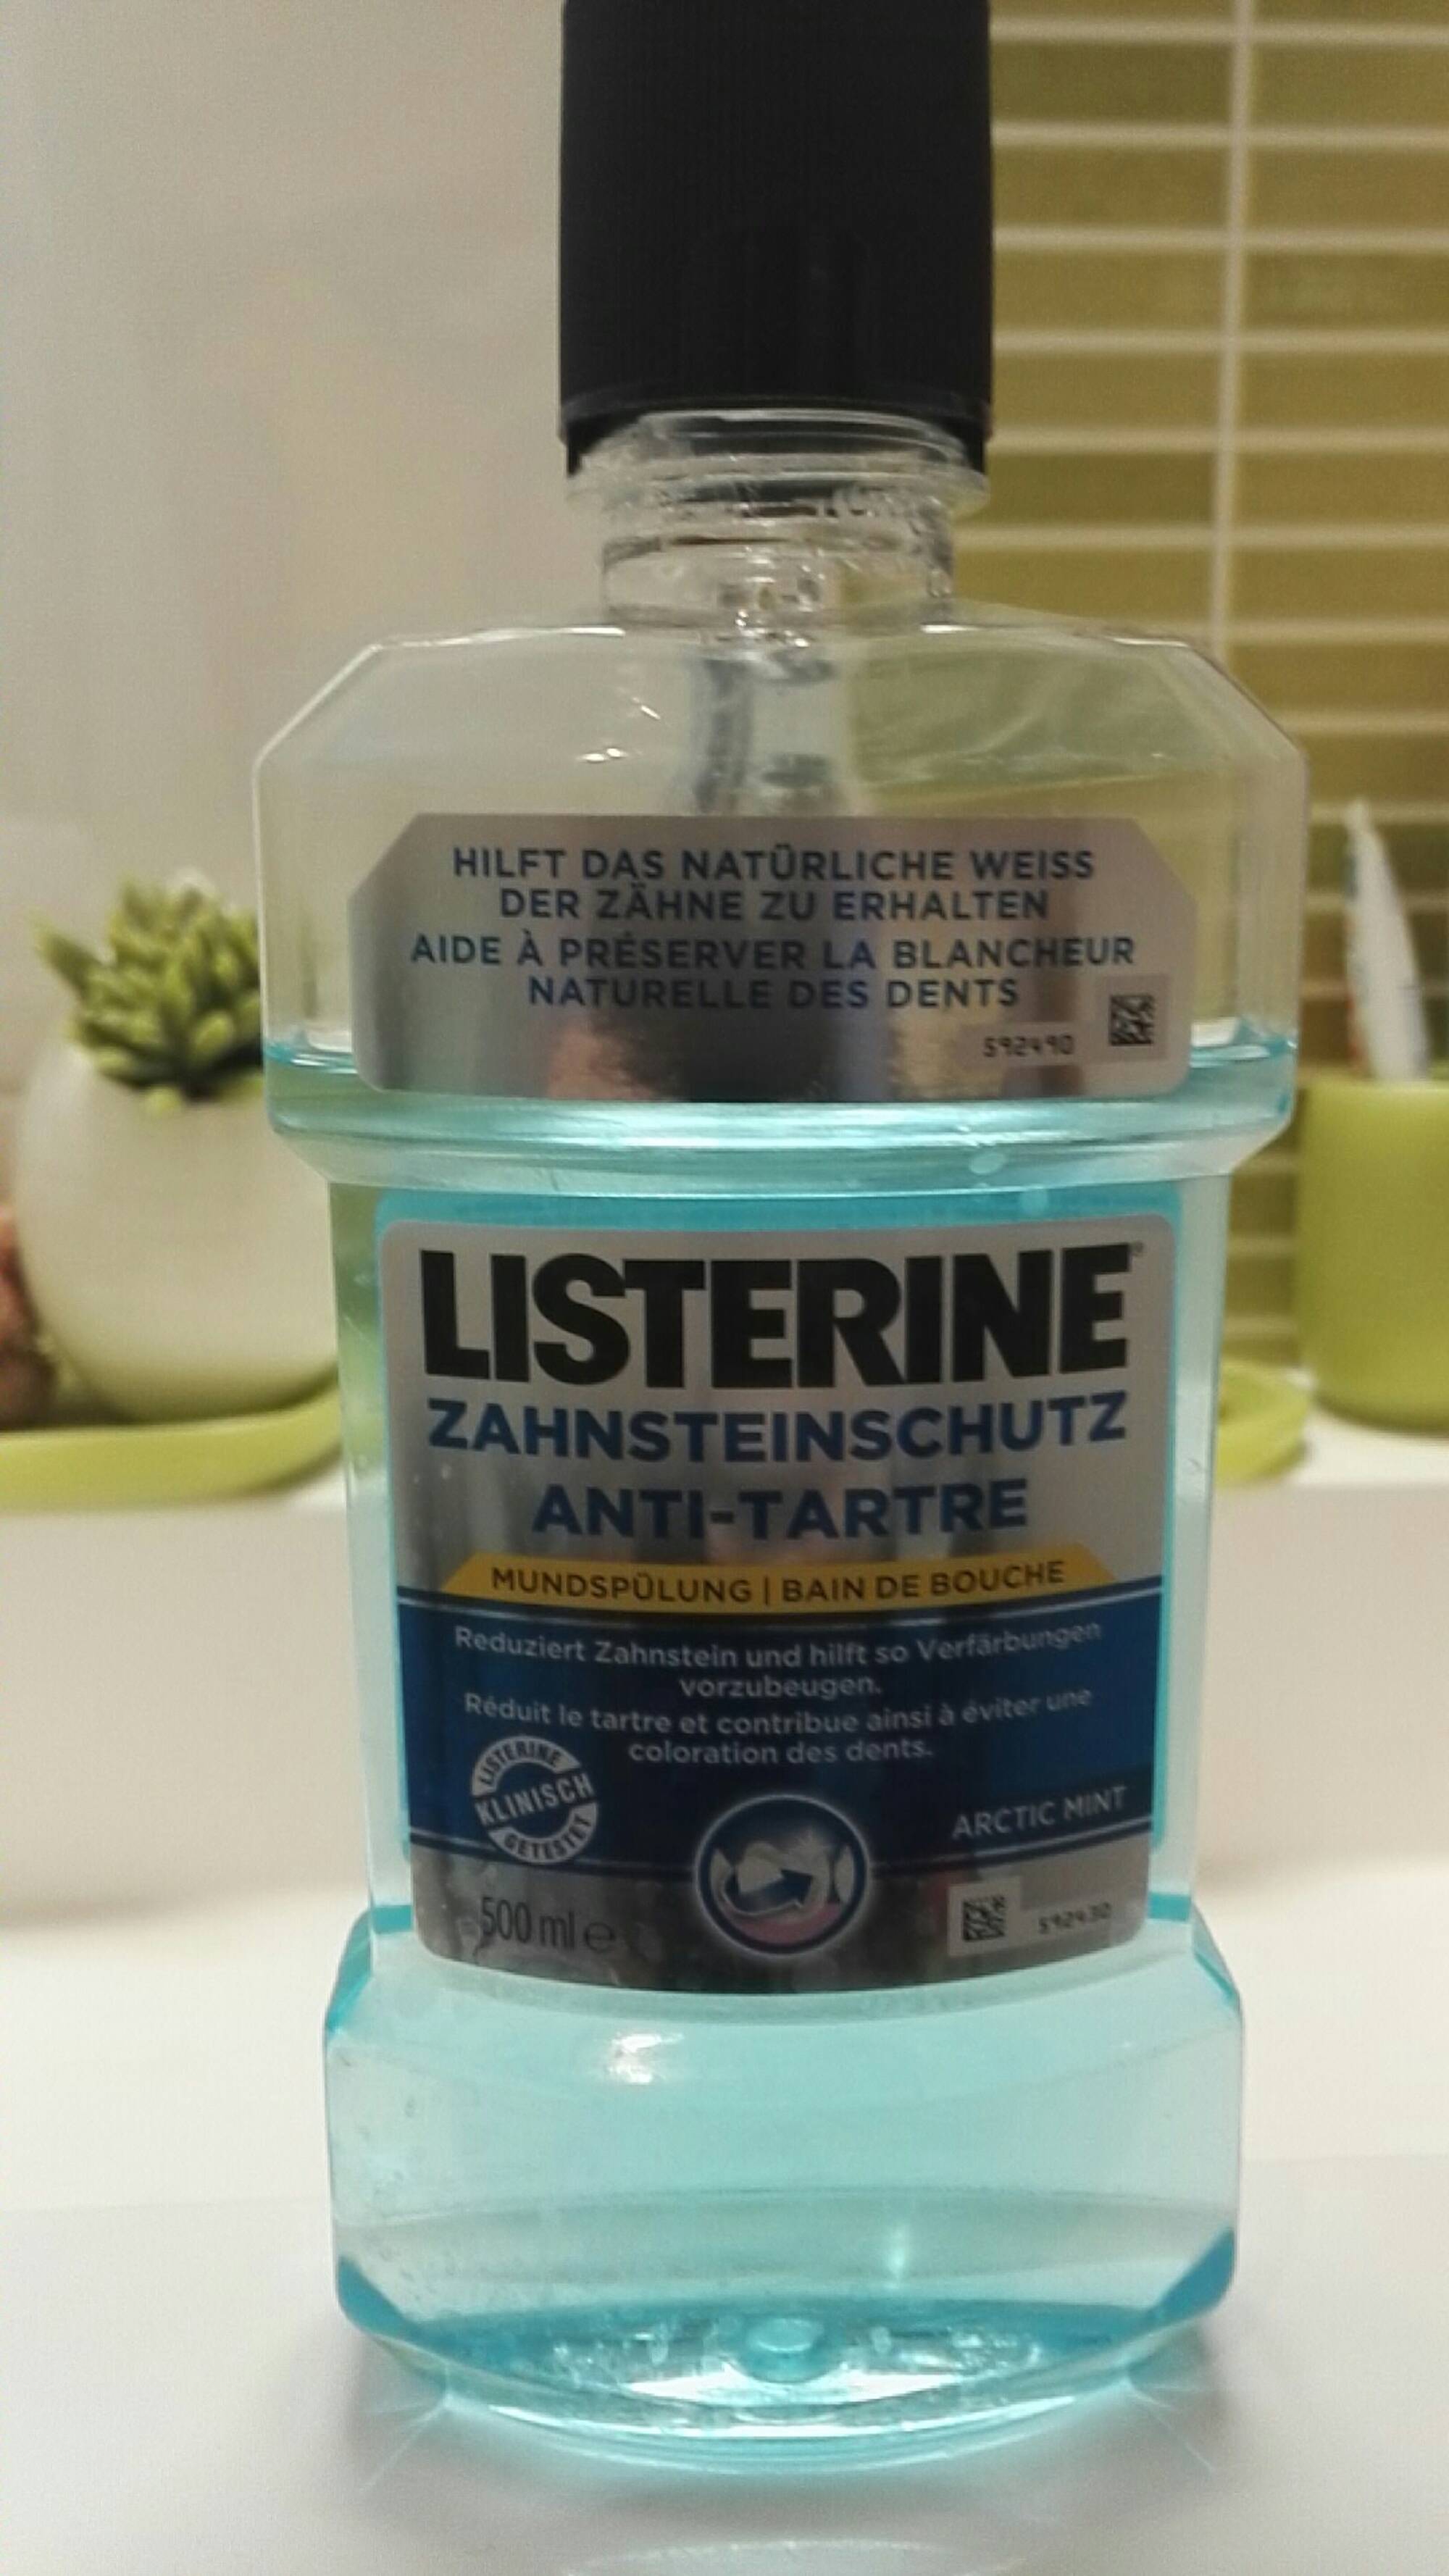 Le bain de bouche soin blancheur Listerine est une solution